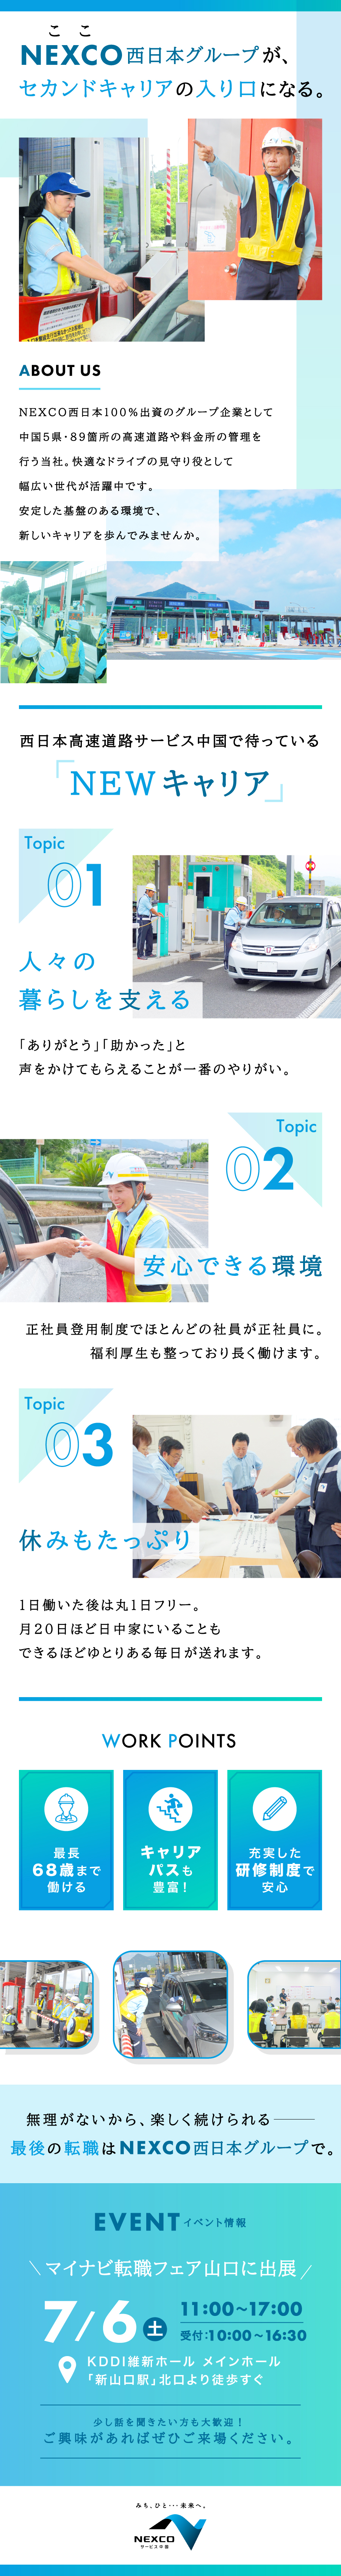 西日本高速道路サービス中国株式会社からのメッセージ